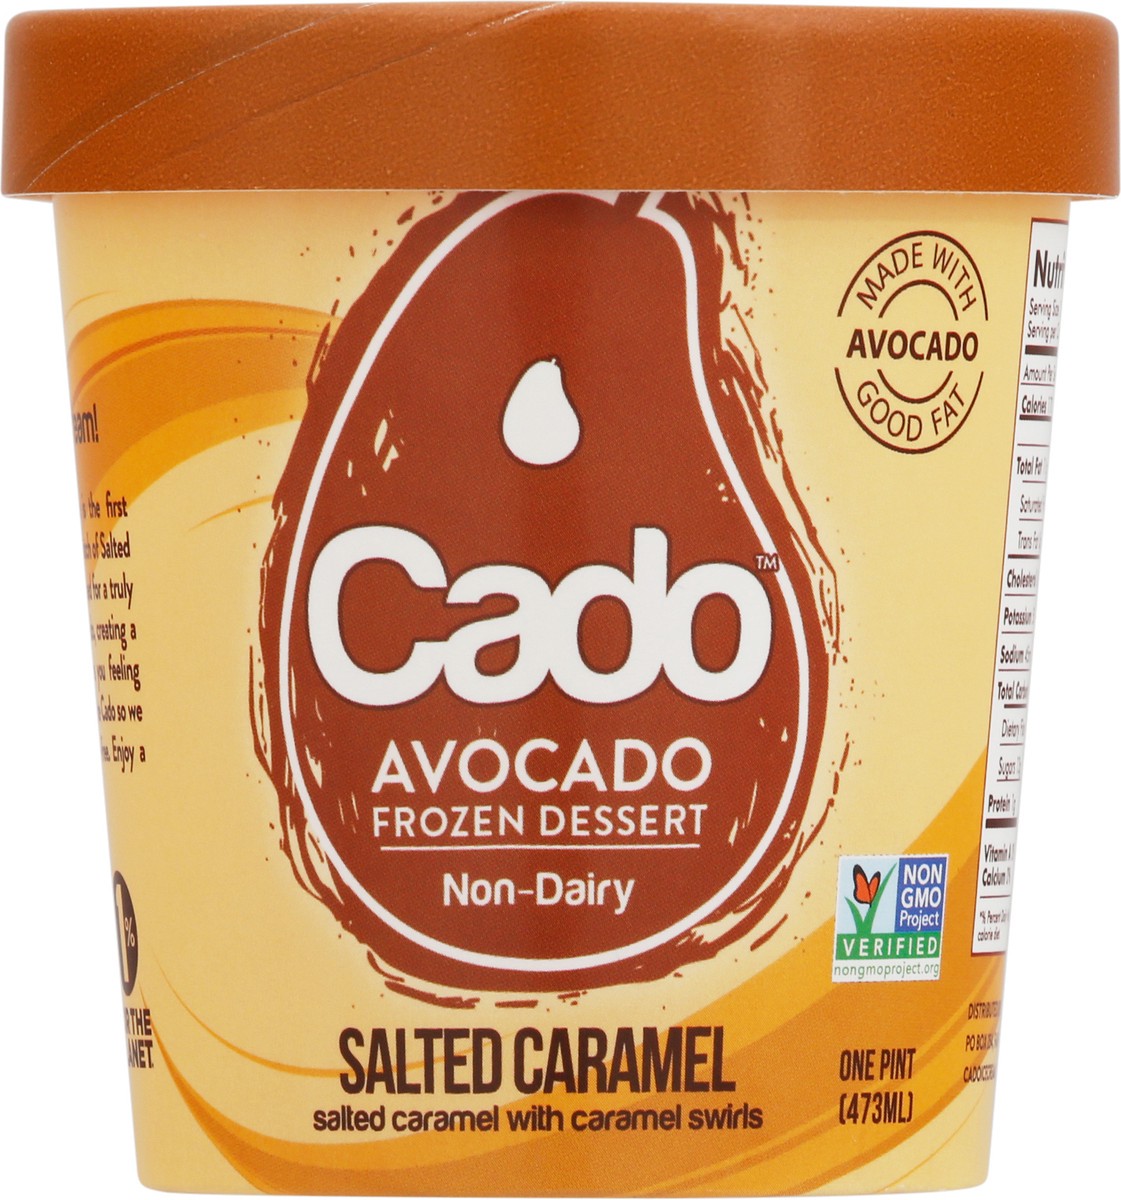 slide 6 of 9, Cado Avocado Salted Caramel Ice Cream, 1 pint